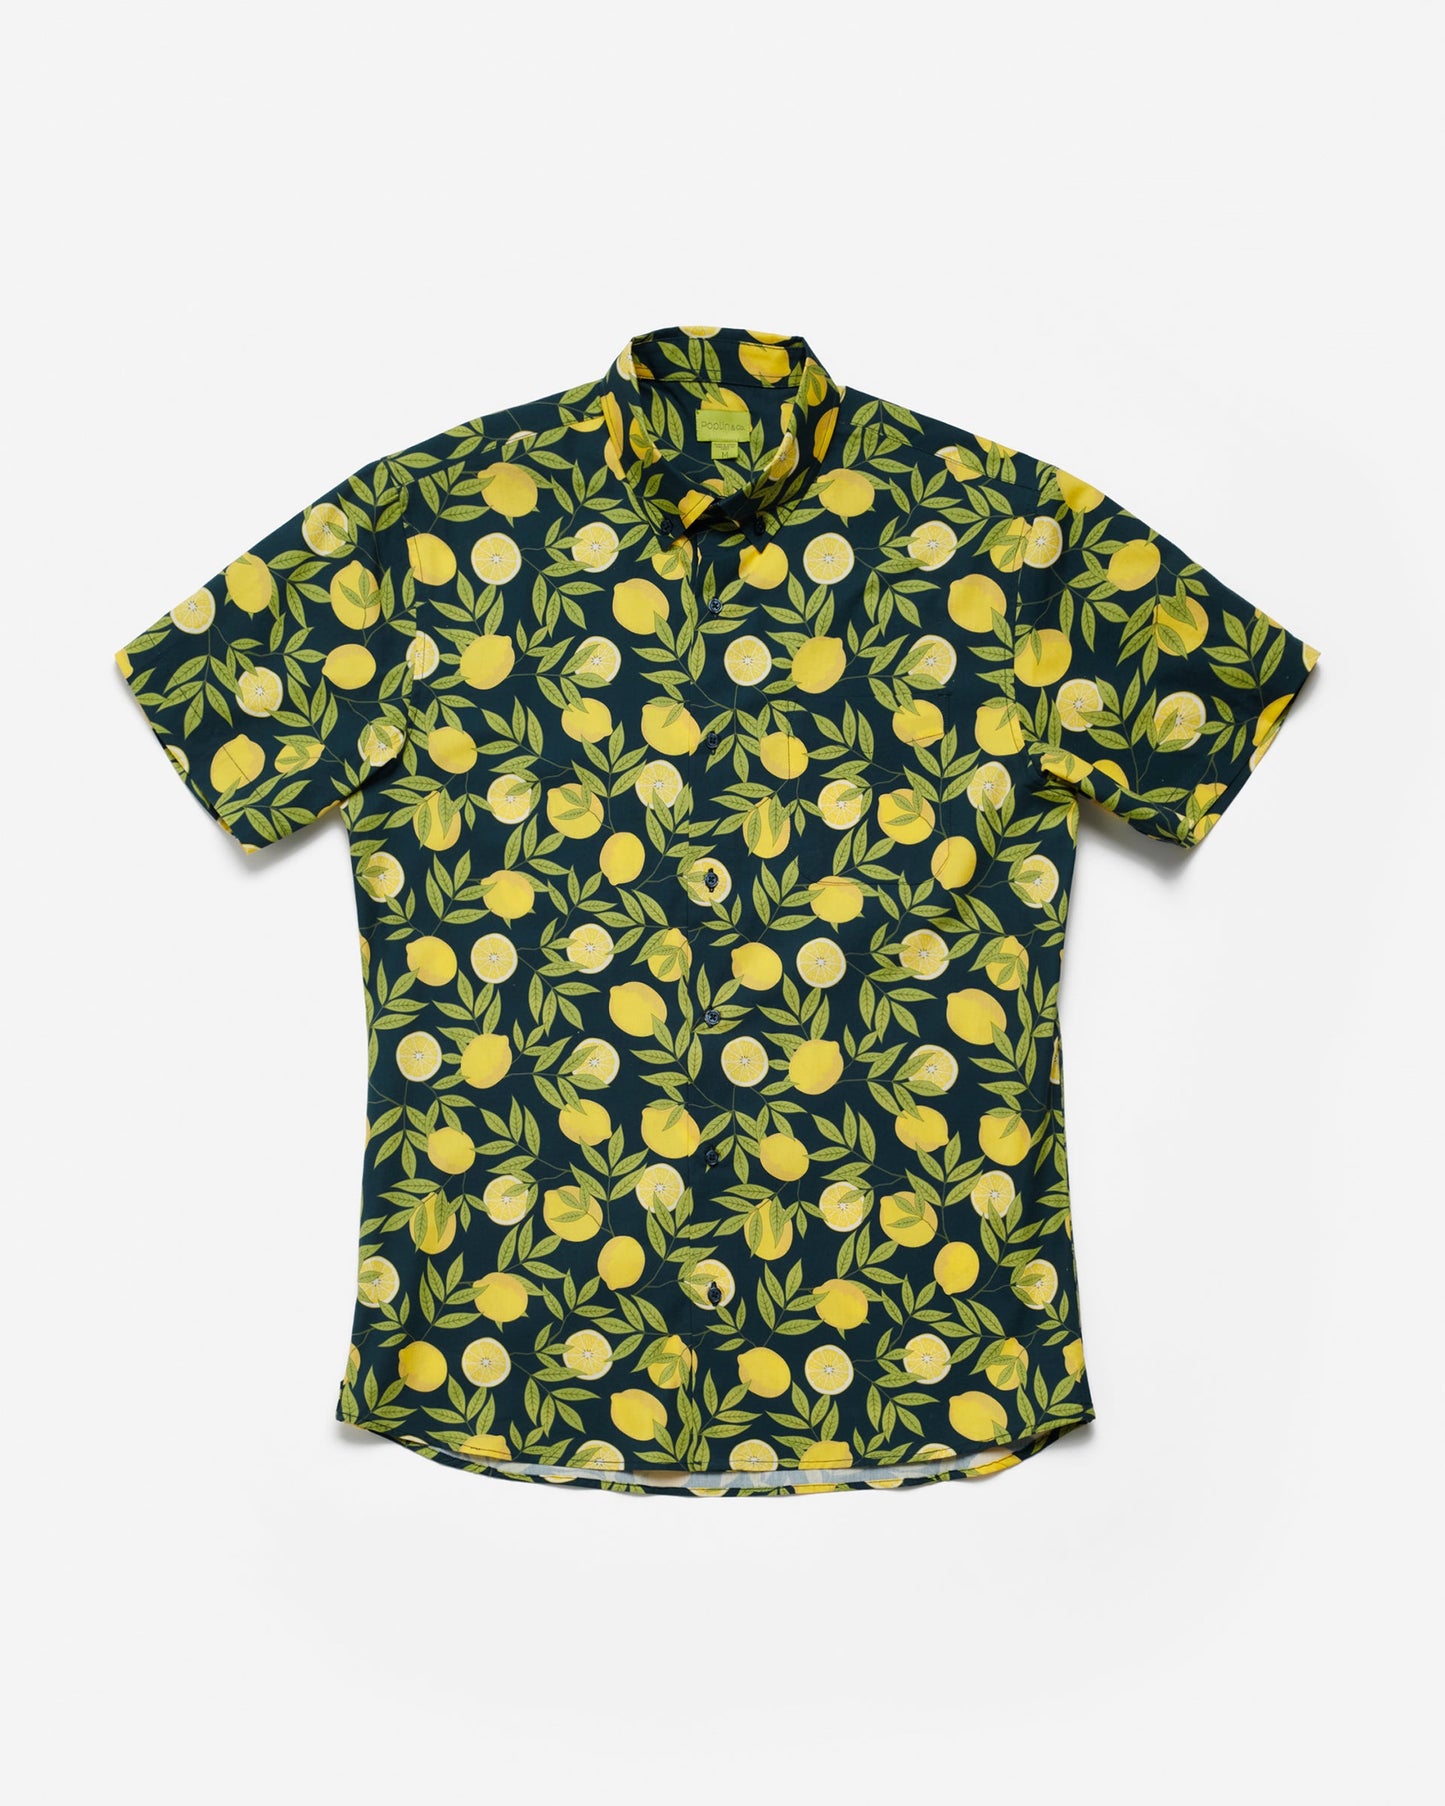 Lemons Print Shirt